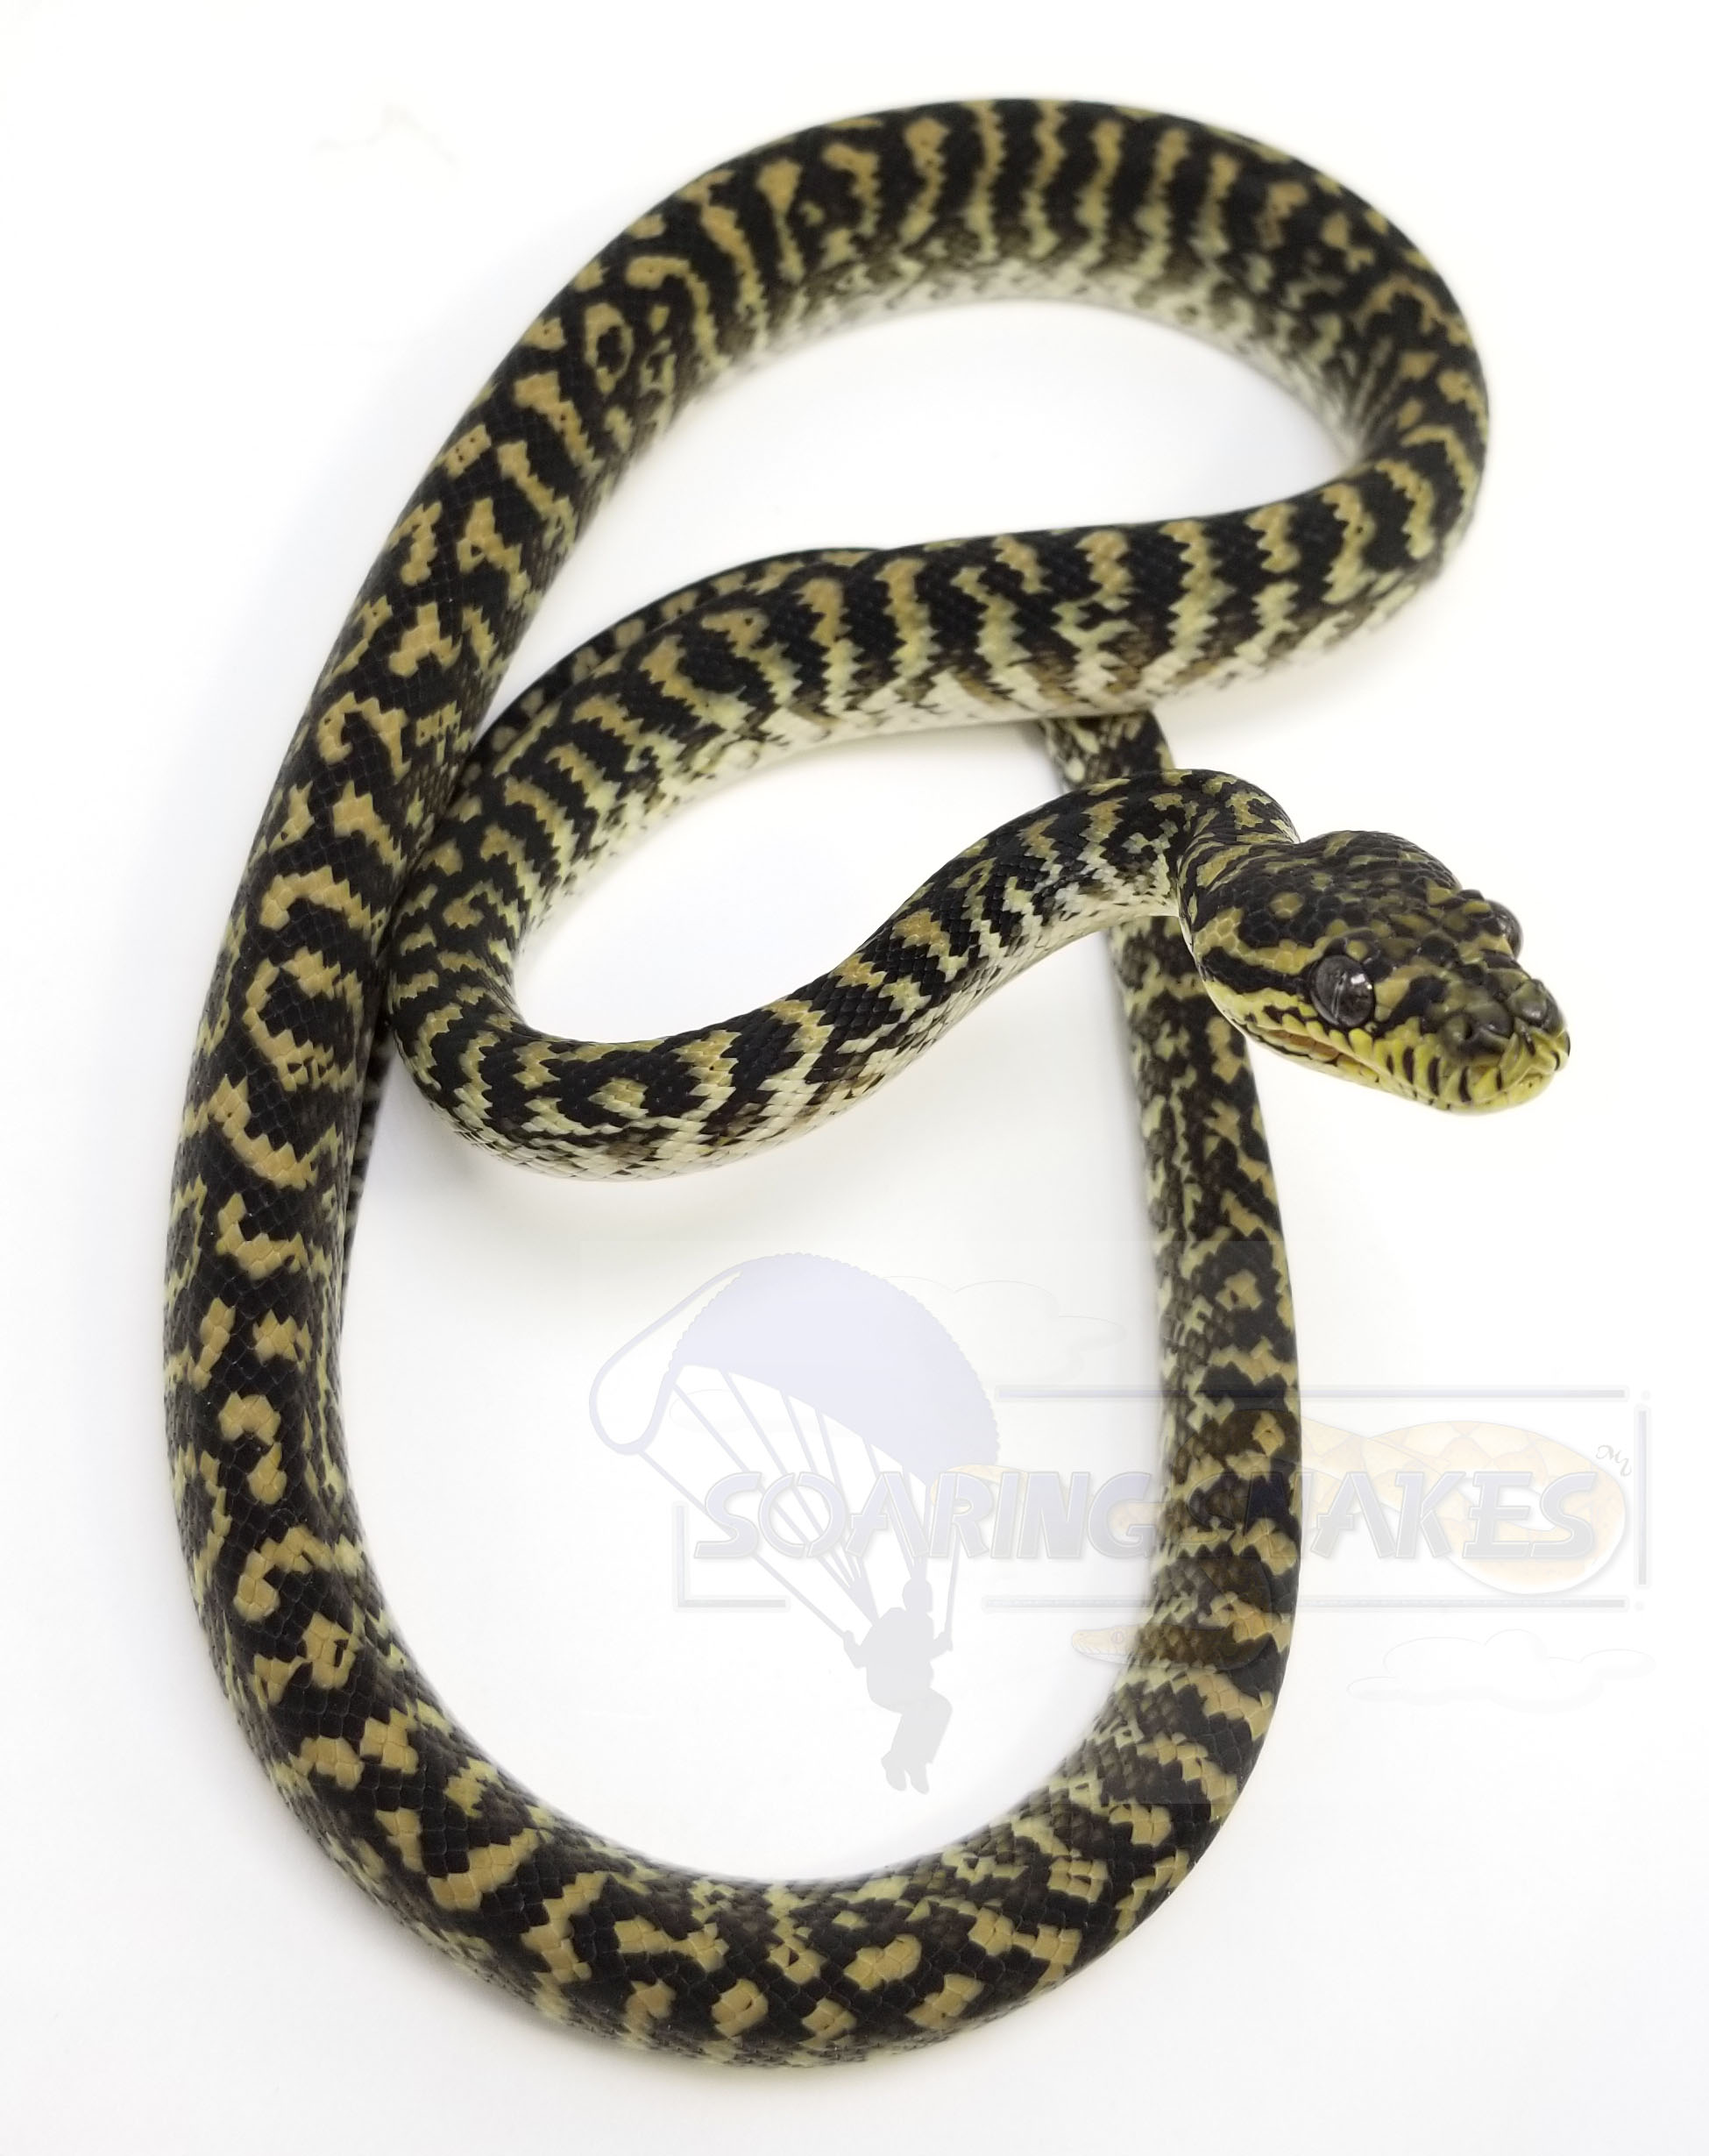 Zebra Other Carpet Python by Soaring Snakes